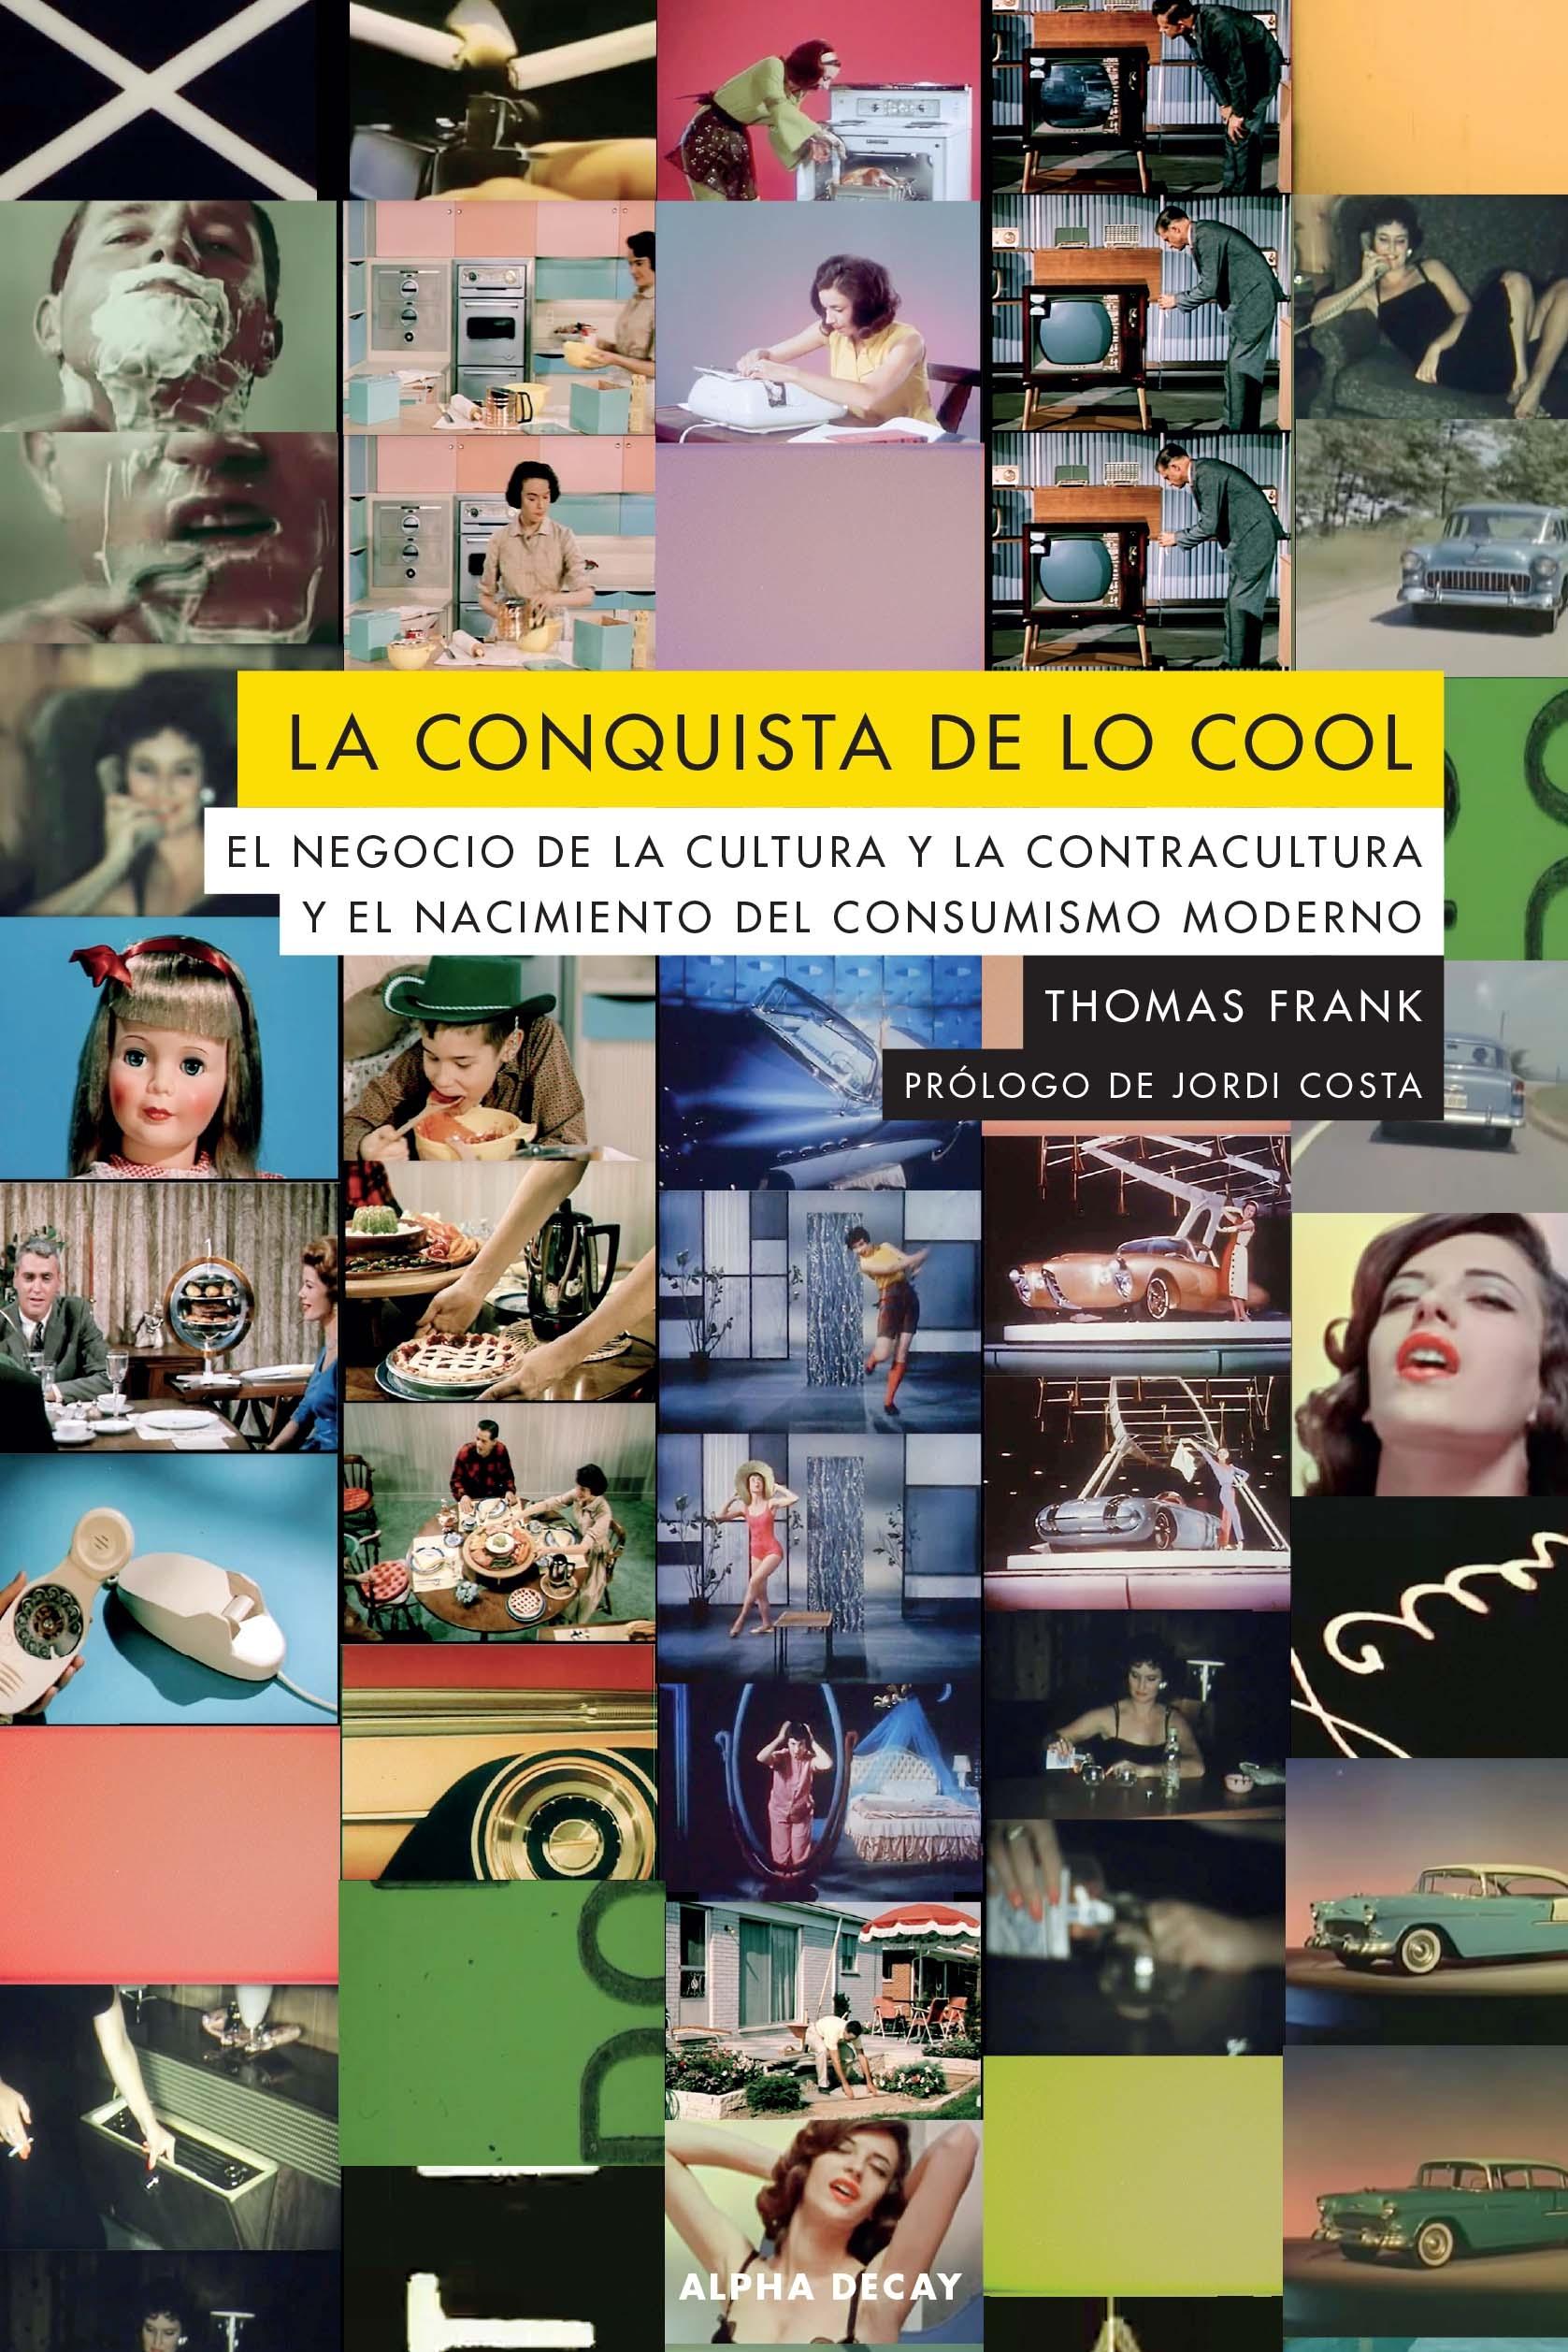 La conquista de lo cool "El negocio de la cultura y la contracultura y el nacimiento del consumismo moderno"